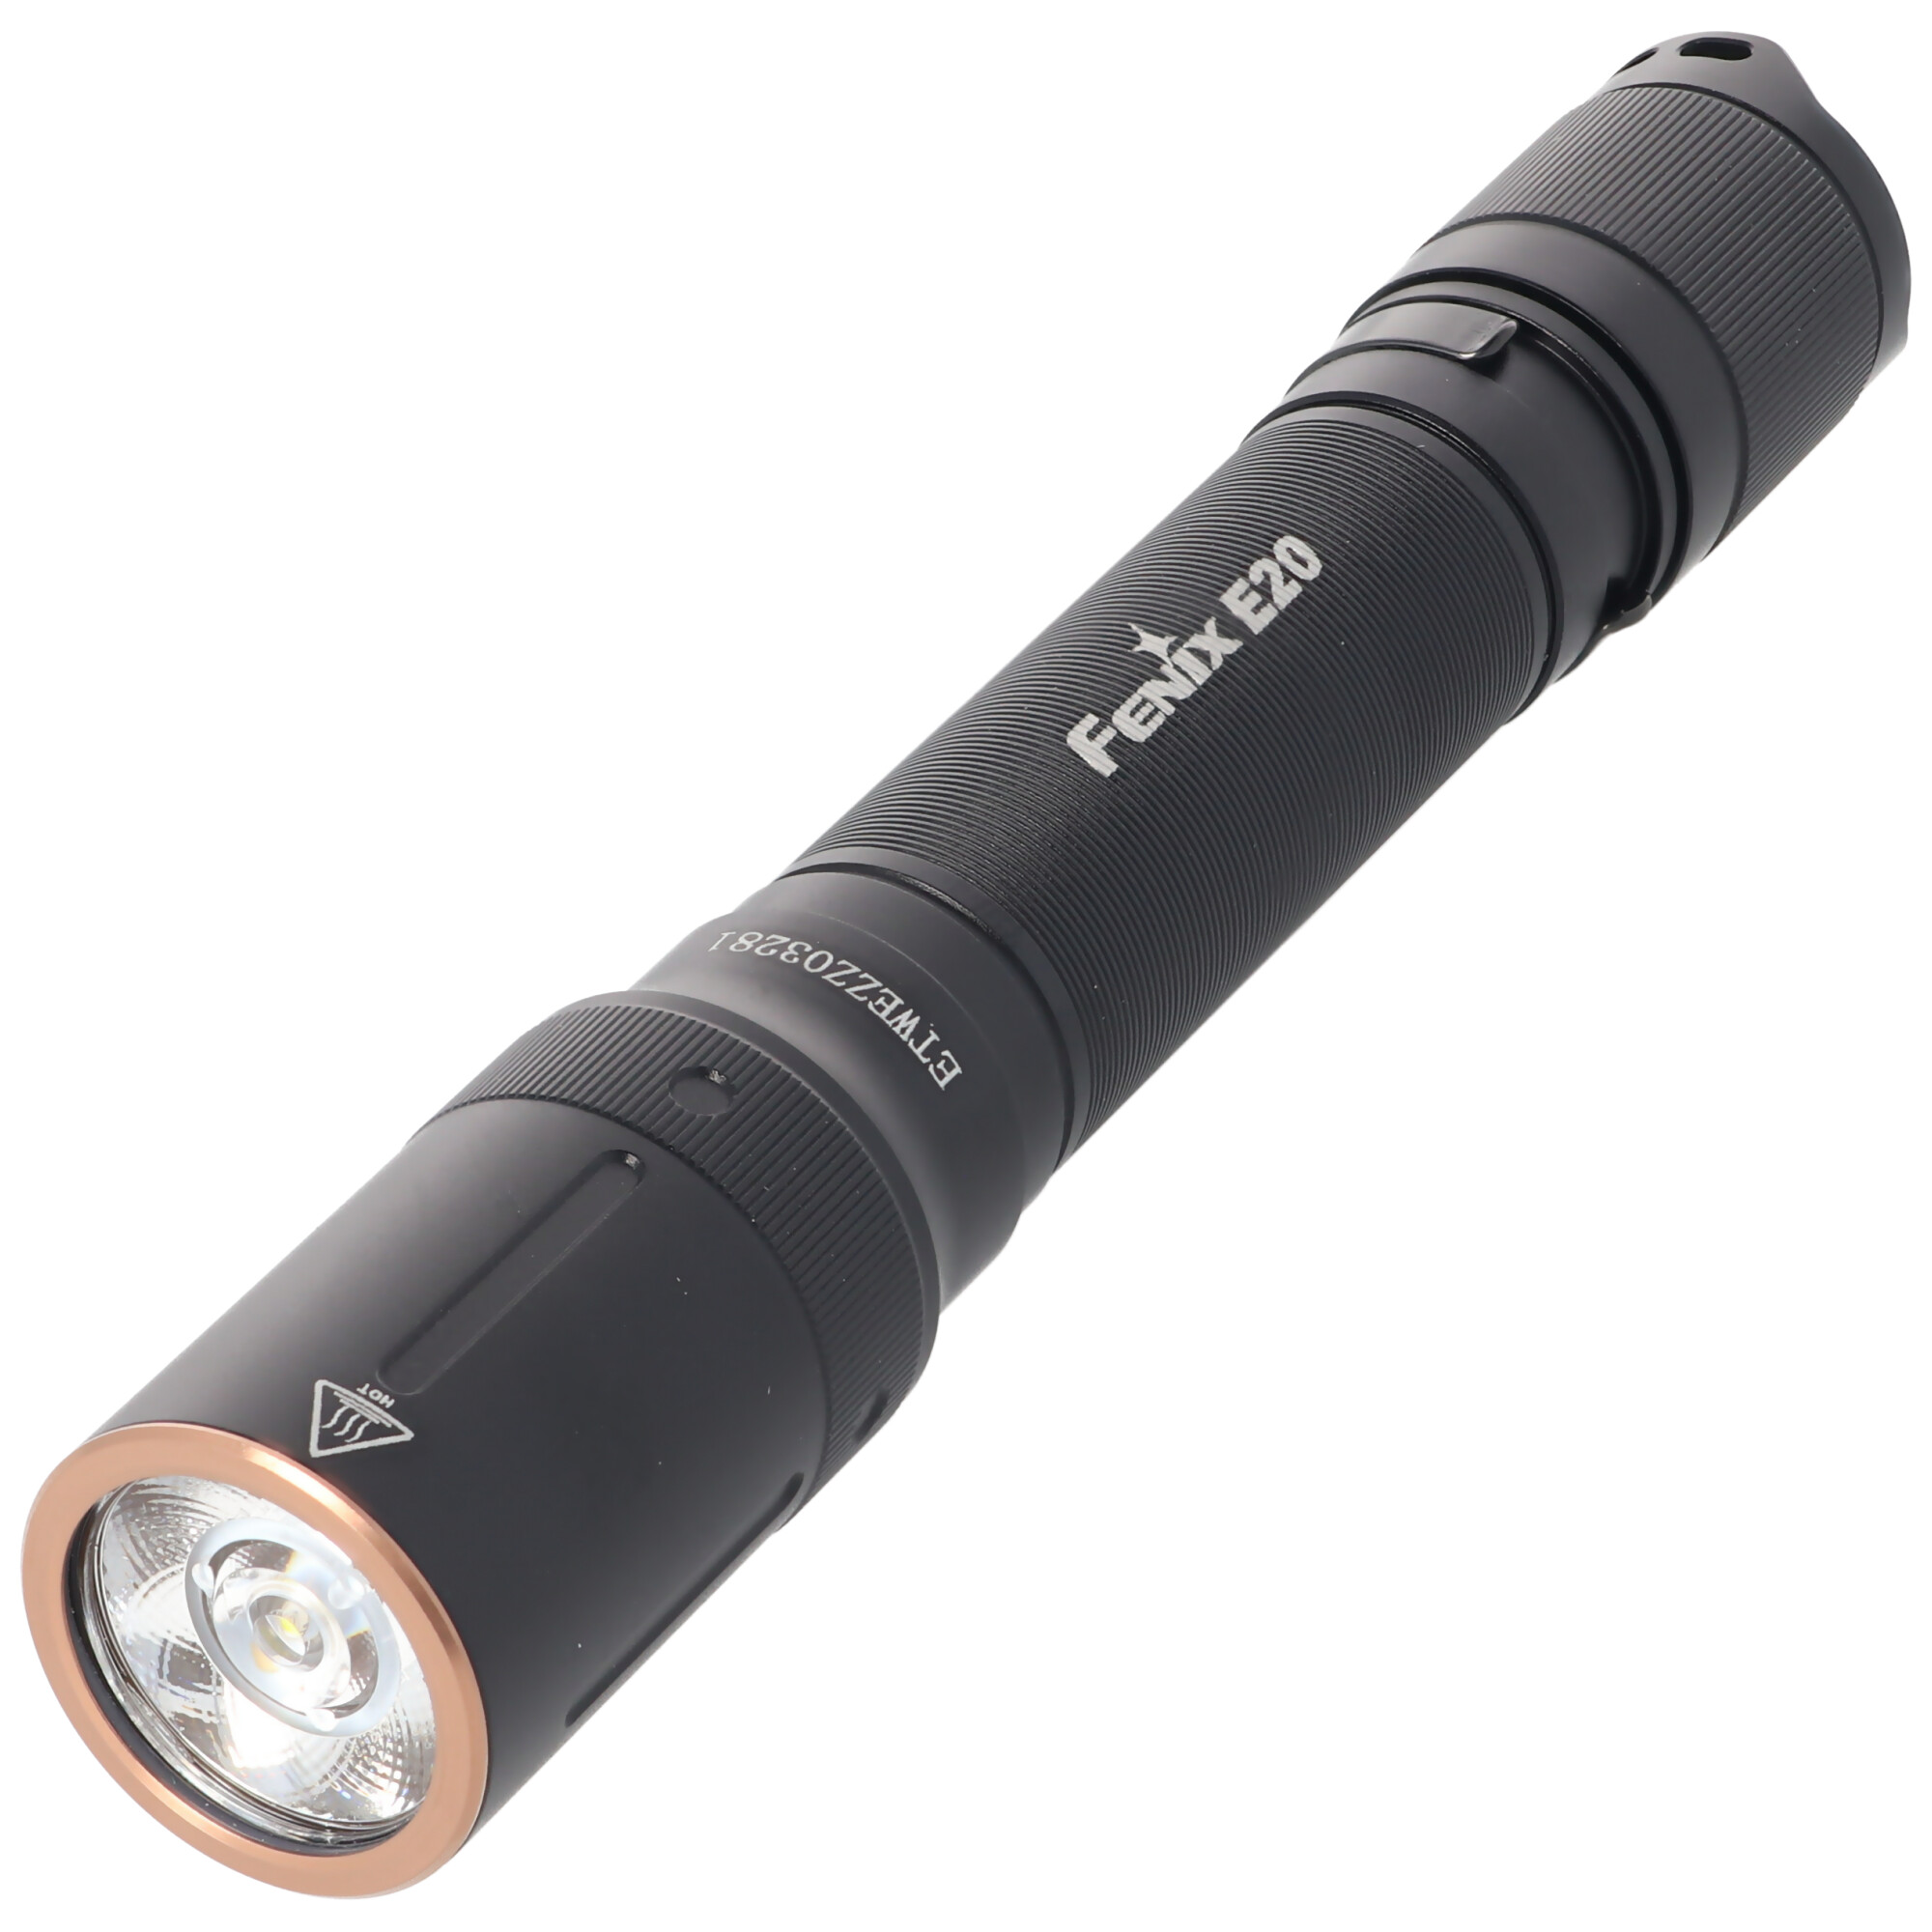 Fenix E20 V2.0 LED-Taschenlampe inklusive Standard Alkaline AA Batterien